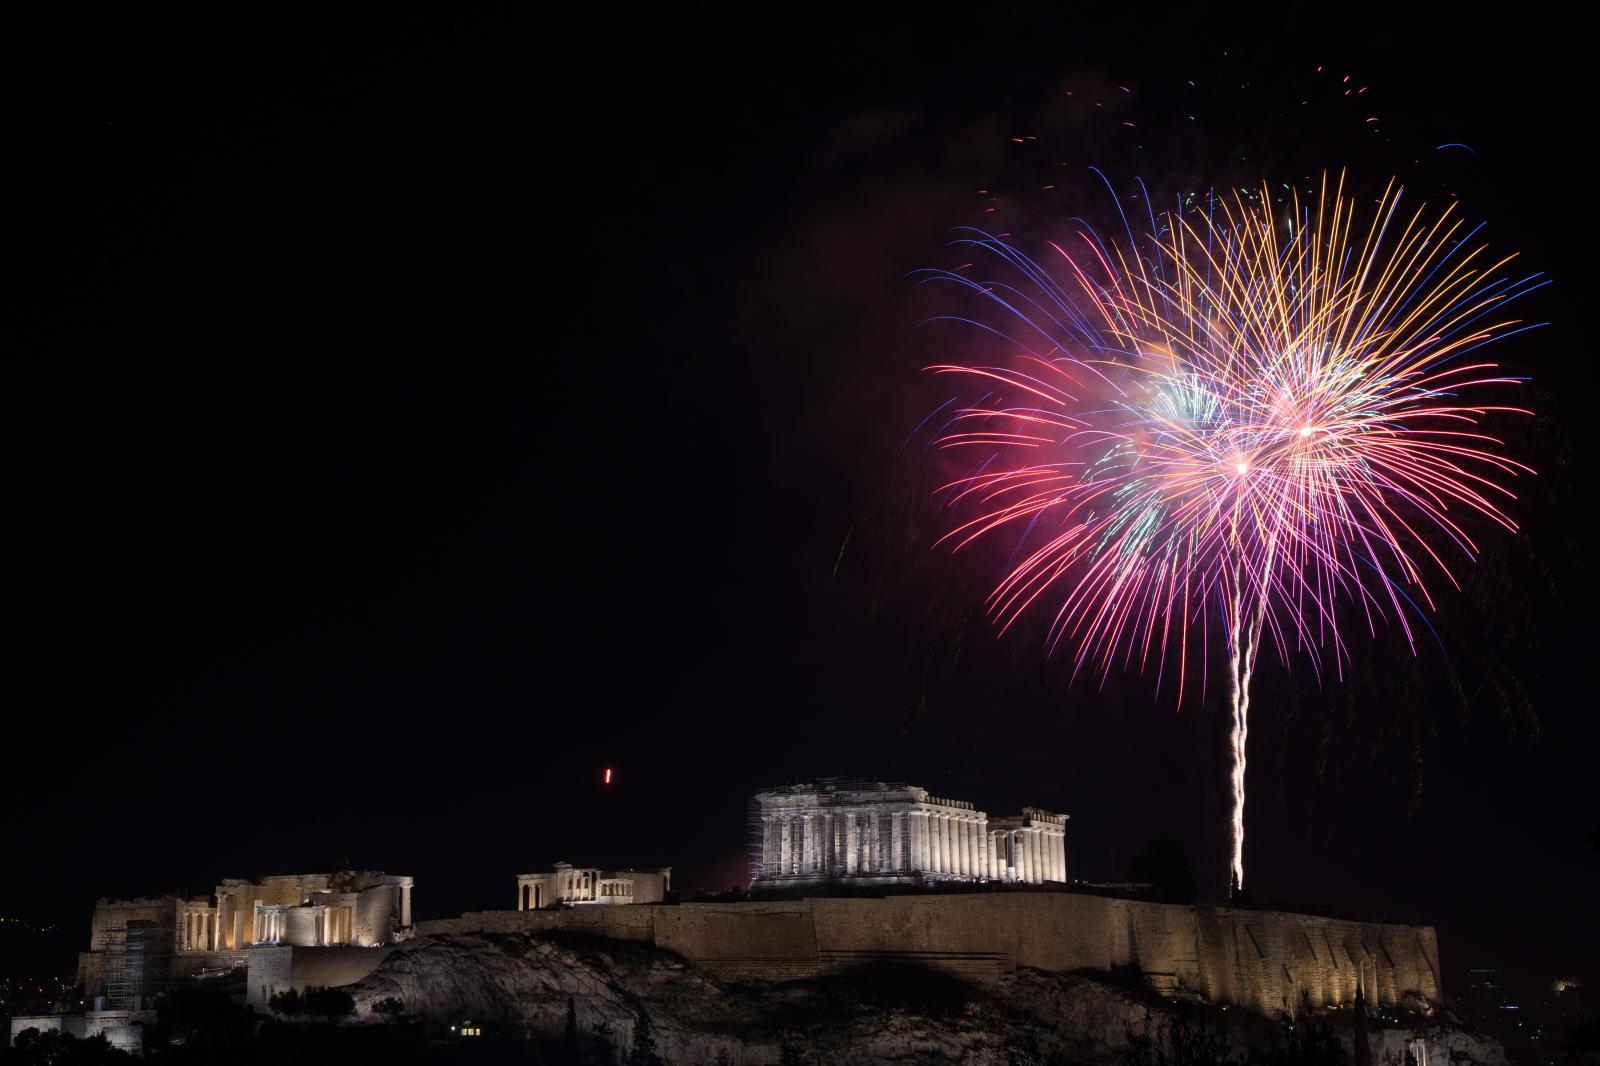 Singles & press - Fireworks go up next to the Parthenon on Acropolis Hill....